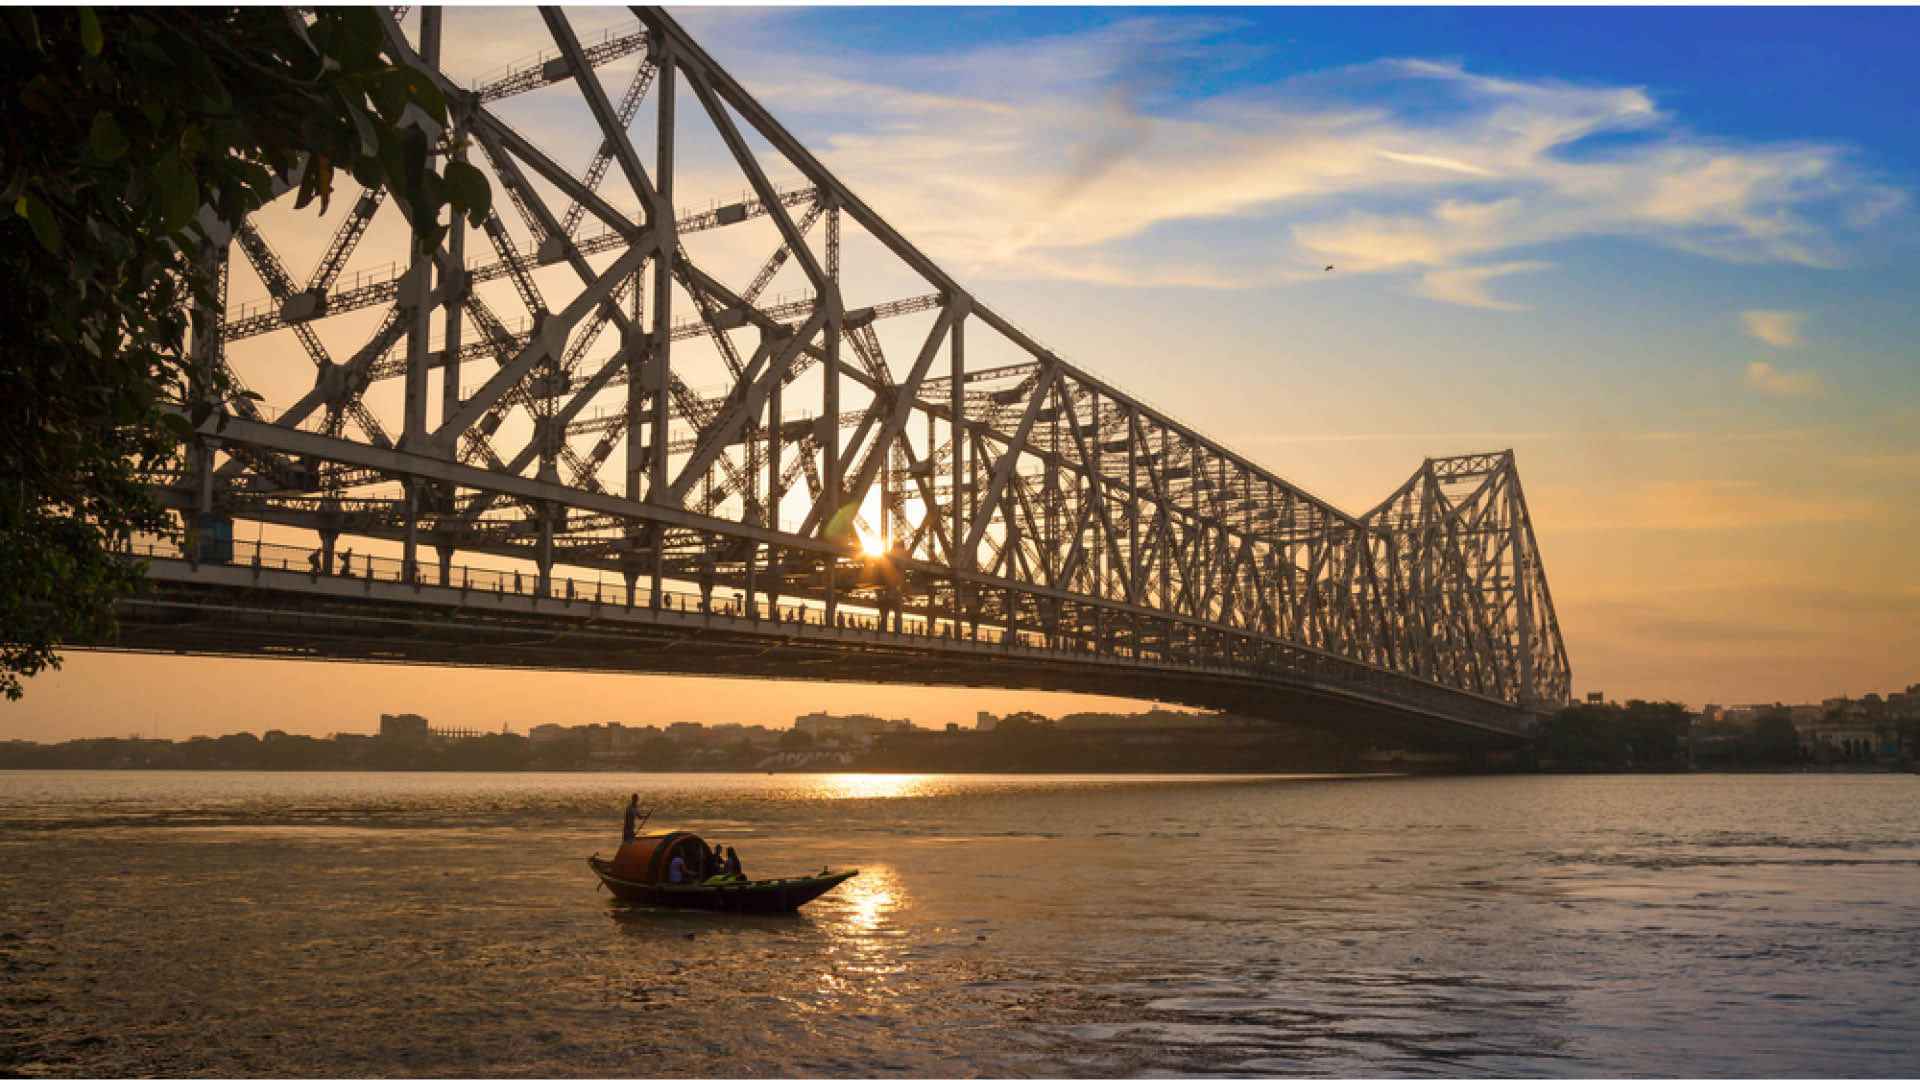 Kolkata Photos Download The BEST Free Kolkata Stock Photos  HD Images